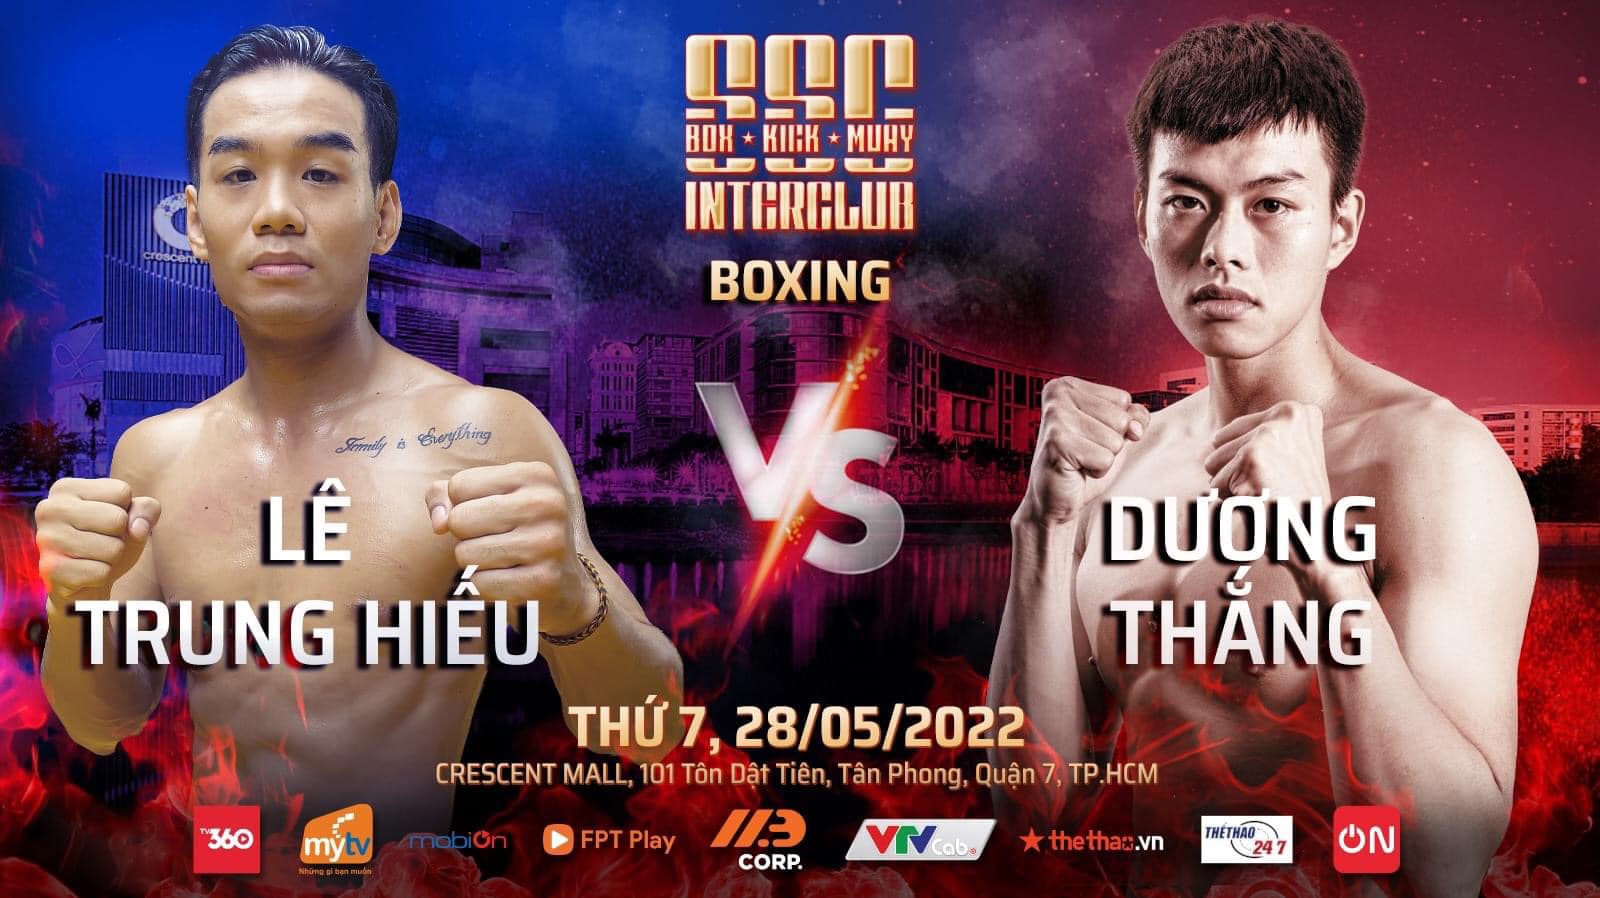 Sự kiện 3 môn võ Boxing, Kickboxing, Muay Thái tổ chức ở TPHCM ngày 28/5 - Ảnh 10